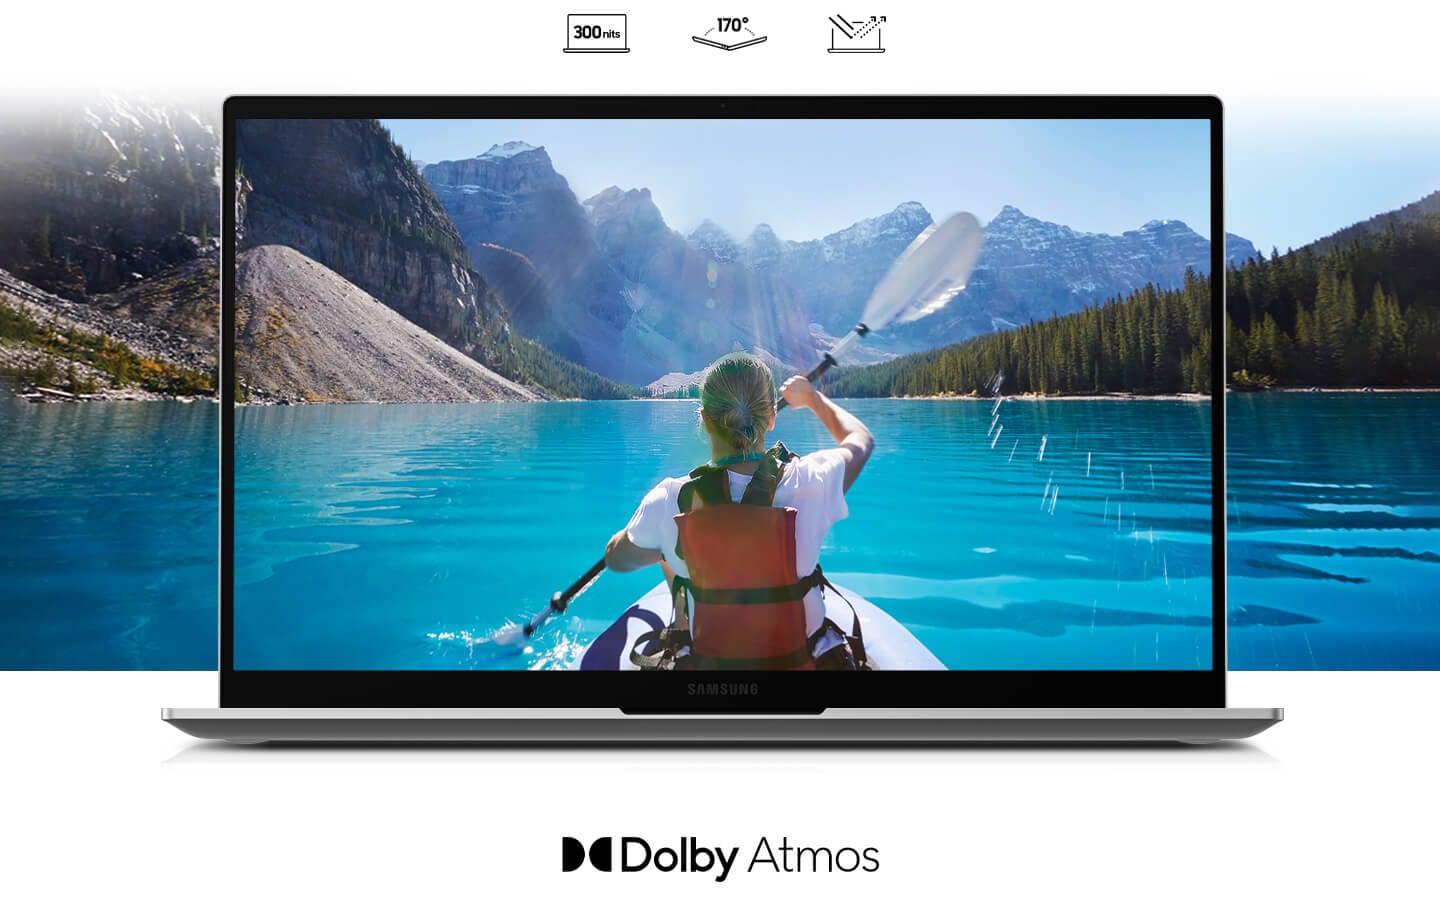 Ein Mädchen mit Pferdeschwanz fährt in einem Kanu und paddelt auf dem von Bergen umgebenen Fluss. Die weitläufige Fluss- und Bergansicht ist sowohl auf der Innen- als auch auf der Außenseite des Laptop-Displays angebracht. Das Dolby Atmos-Logo ist am unteren Rand angebracht.